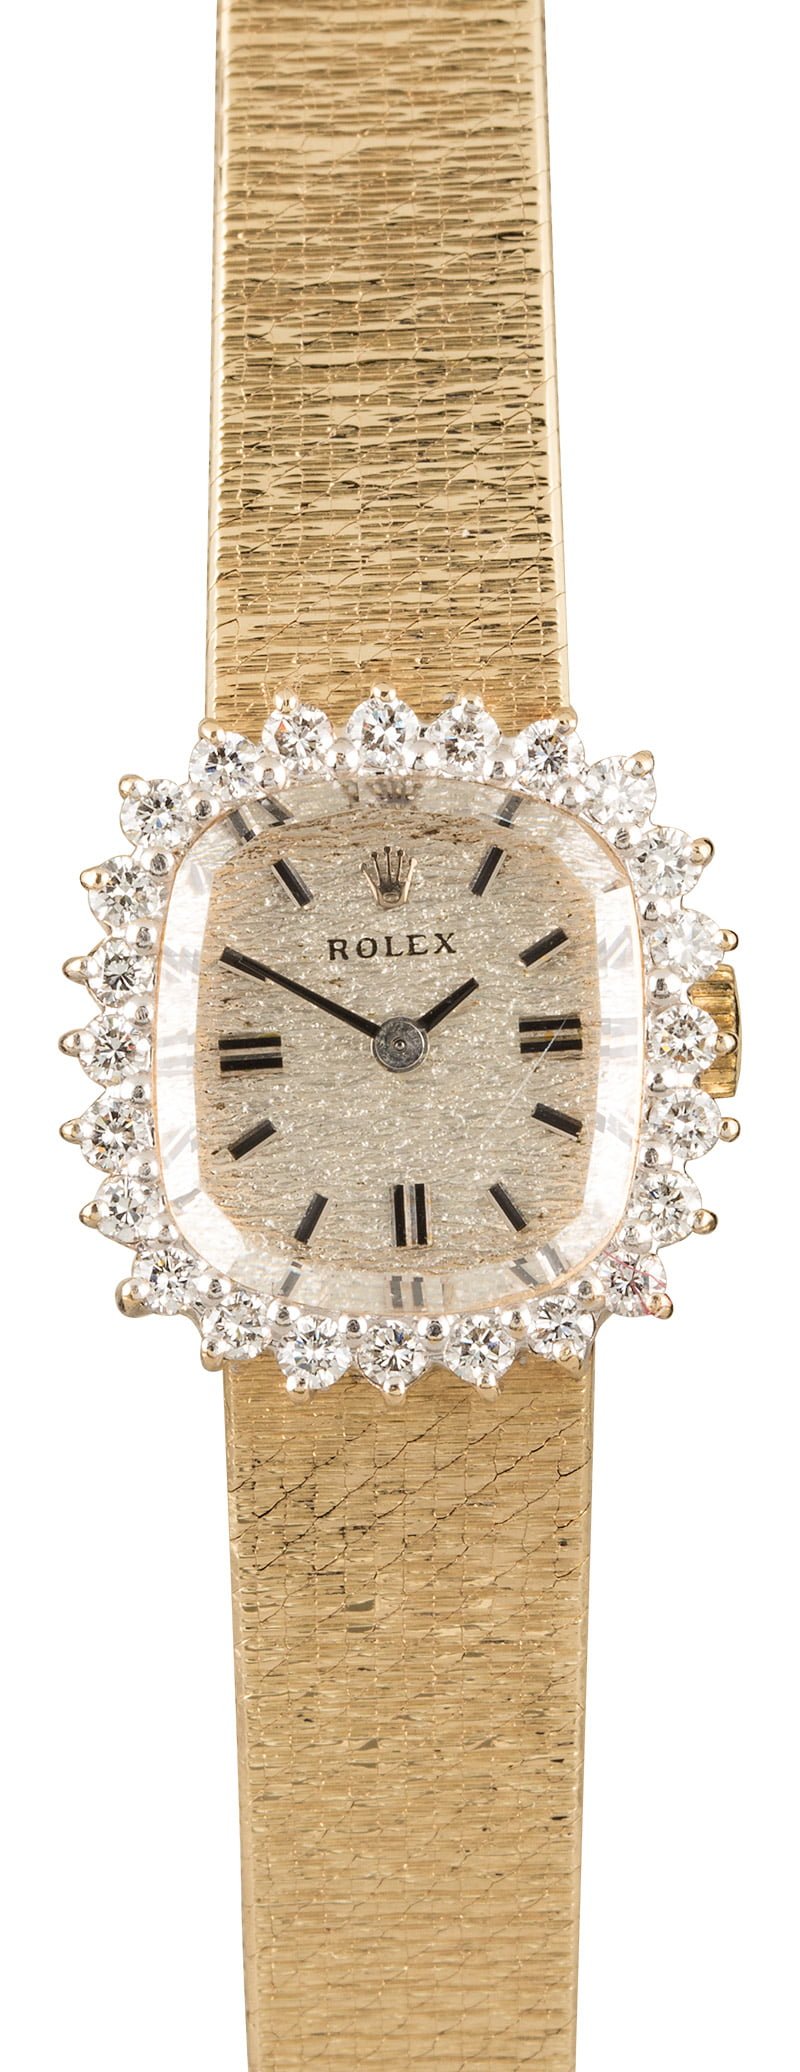 Rolex Cocktail Watch